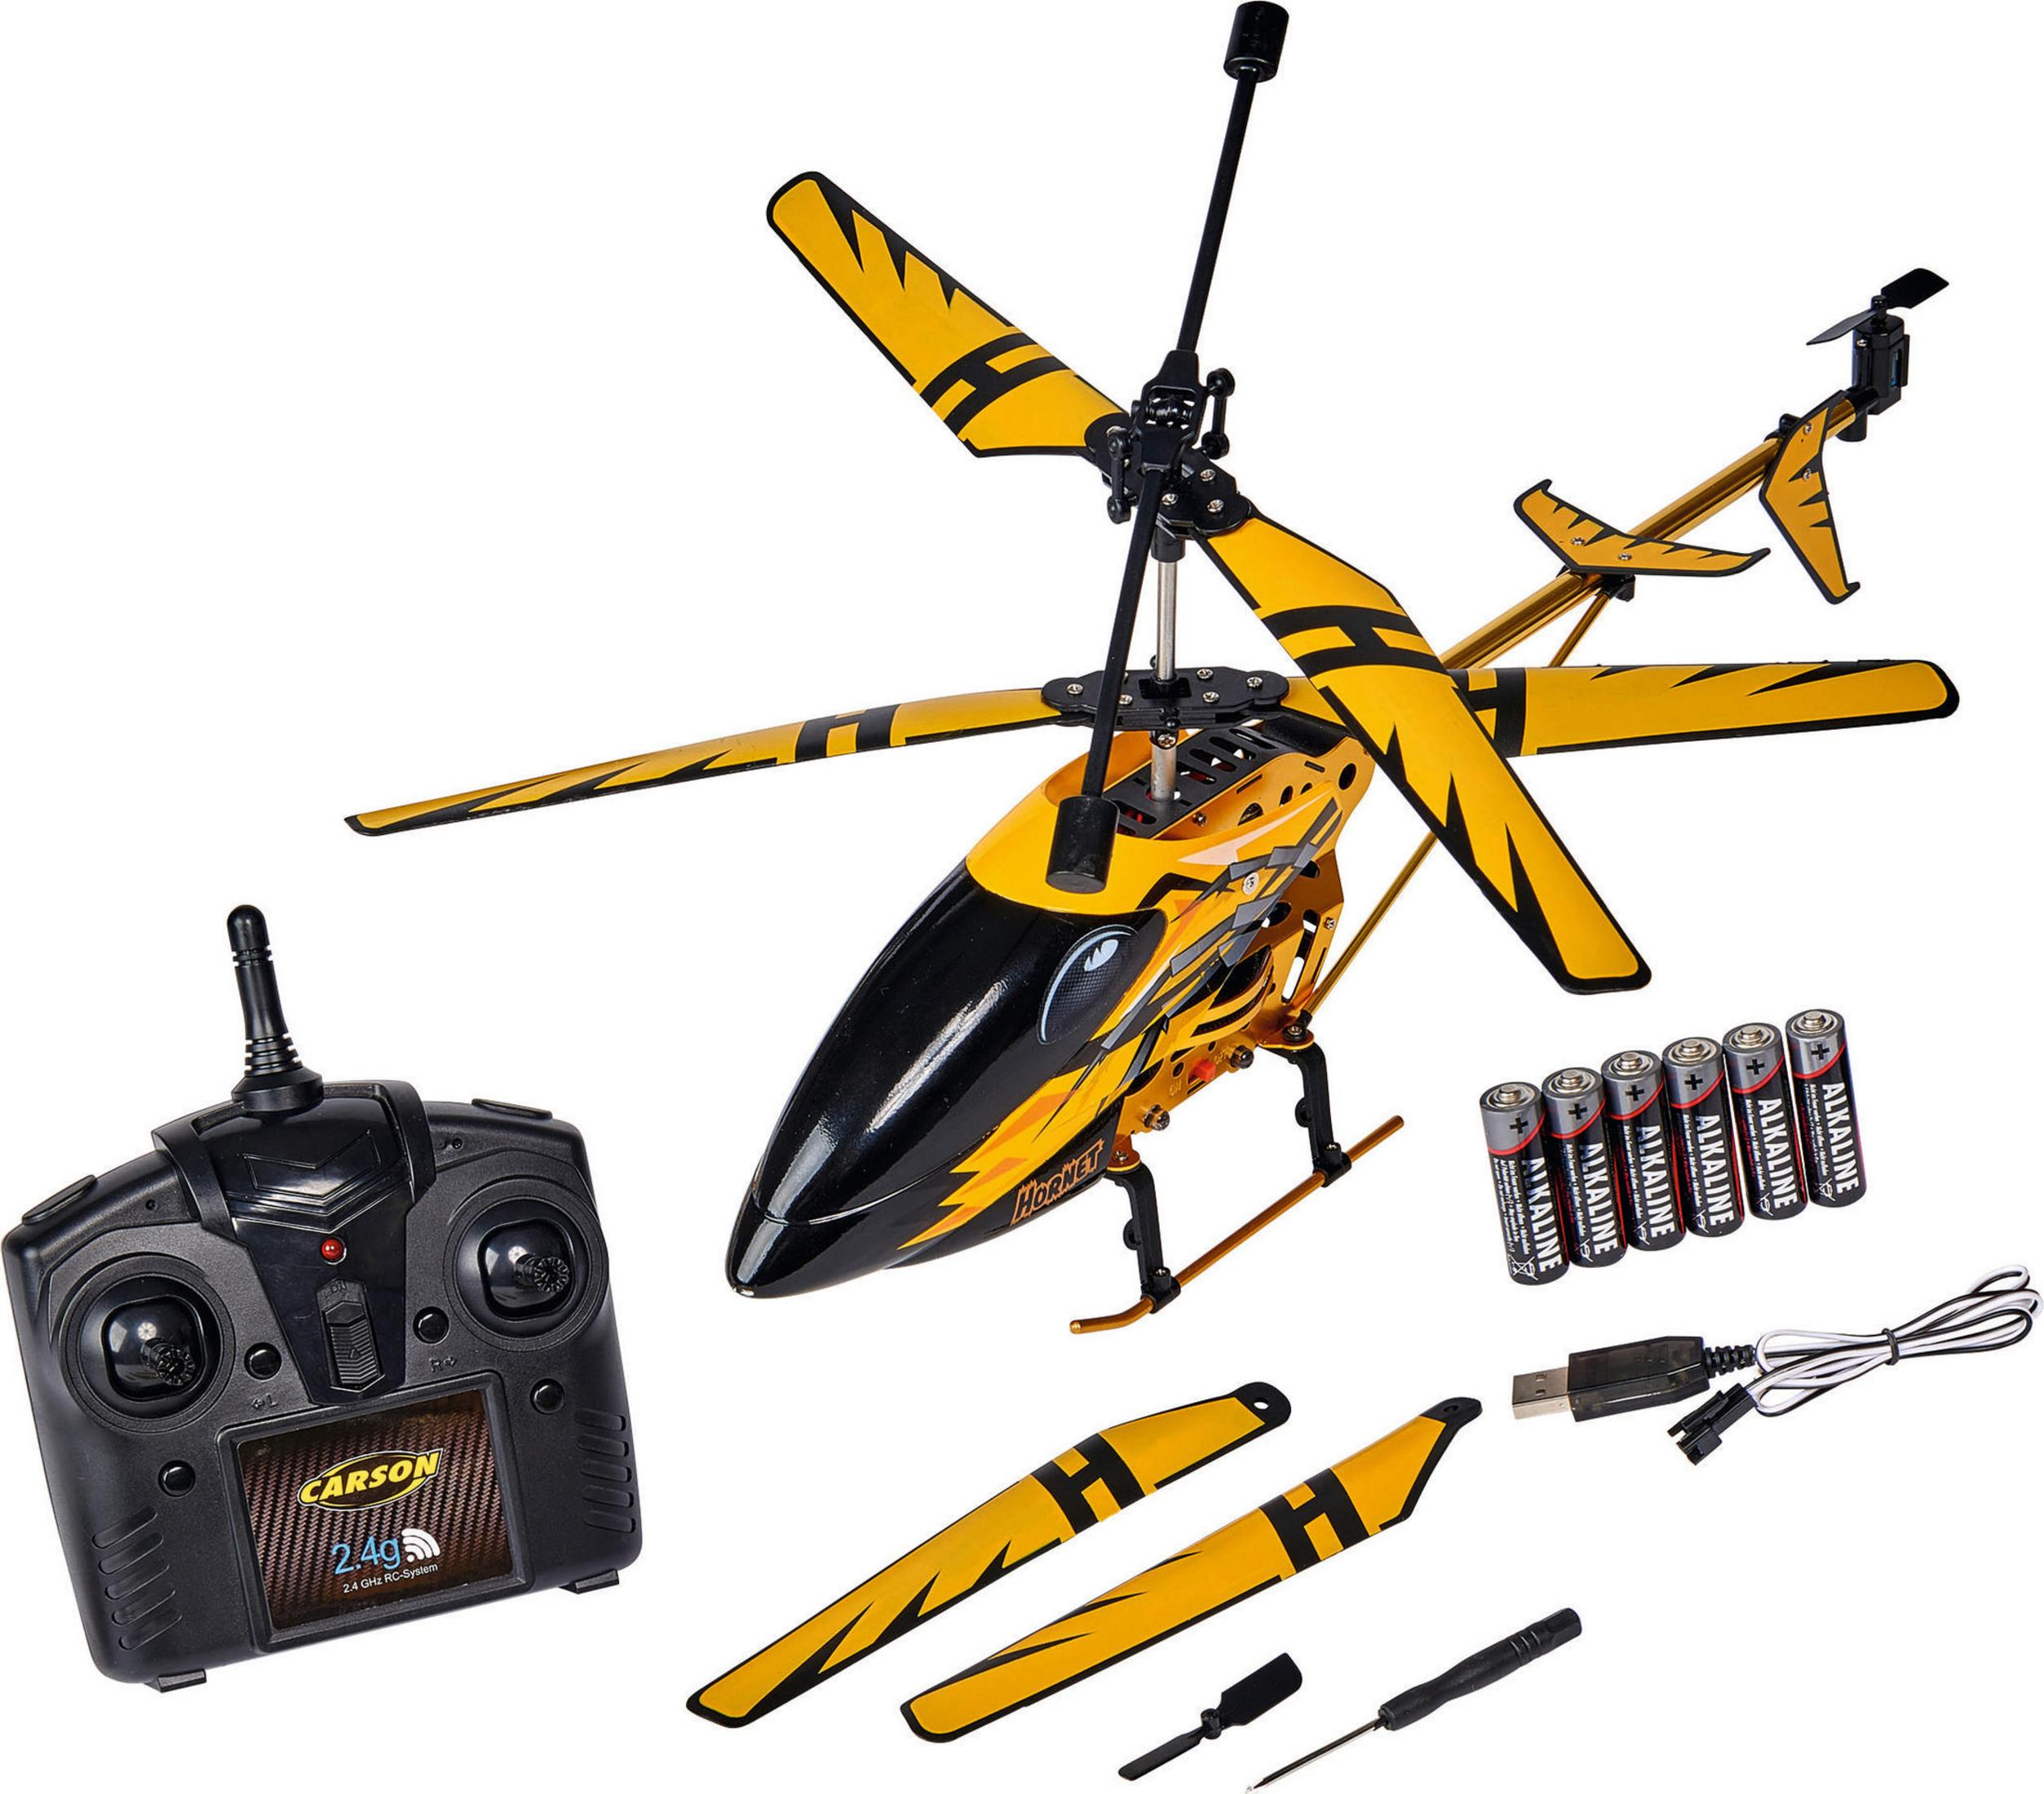 CARSON 500507139 EASY TYRANN Gelb Spielzeughubschraubermodell, 2.4GHZ 100% HORNET RTF 350